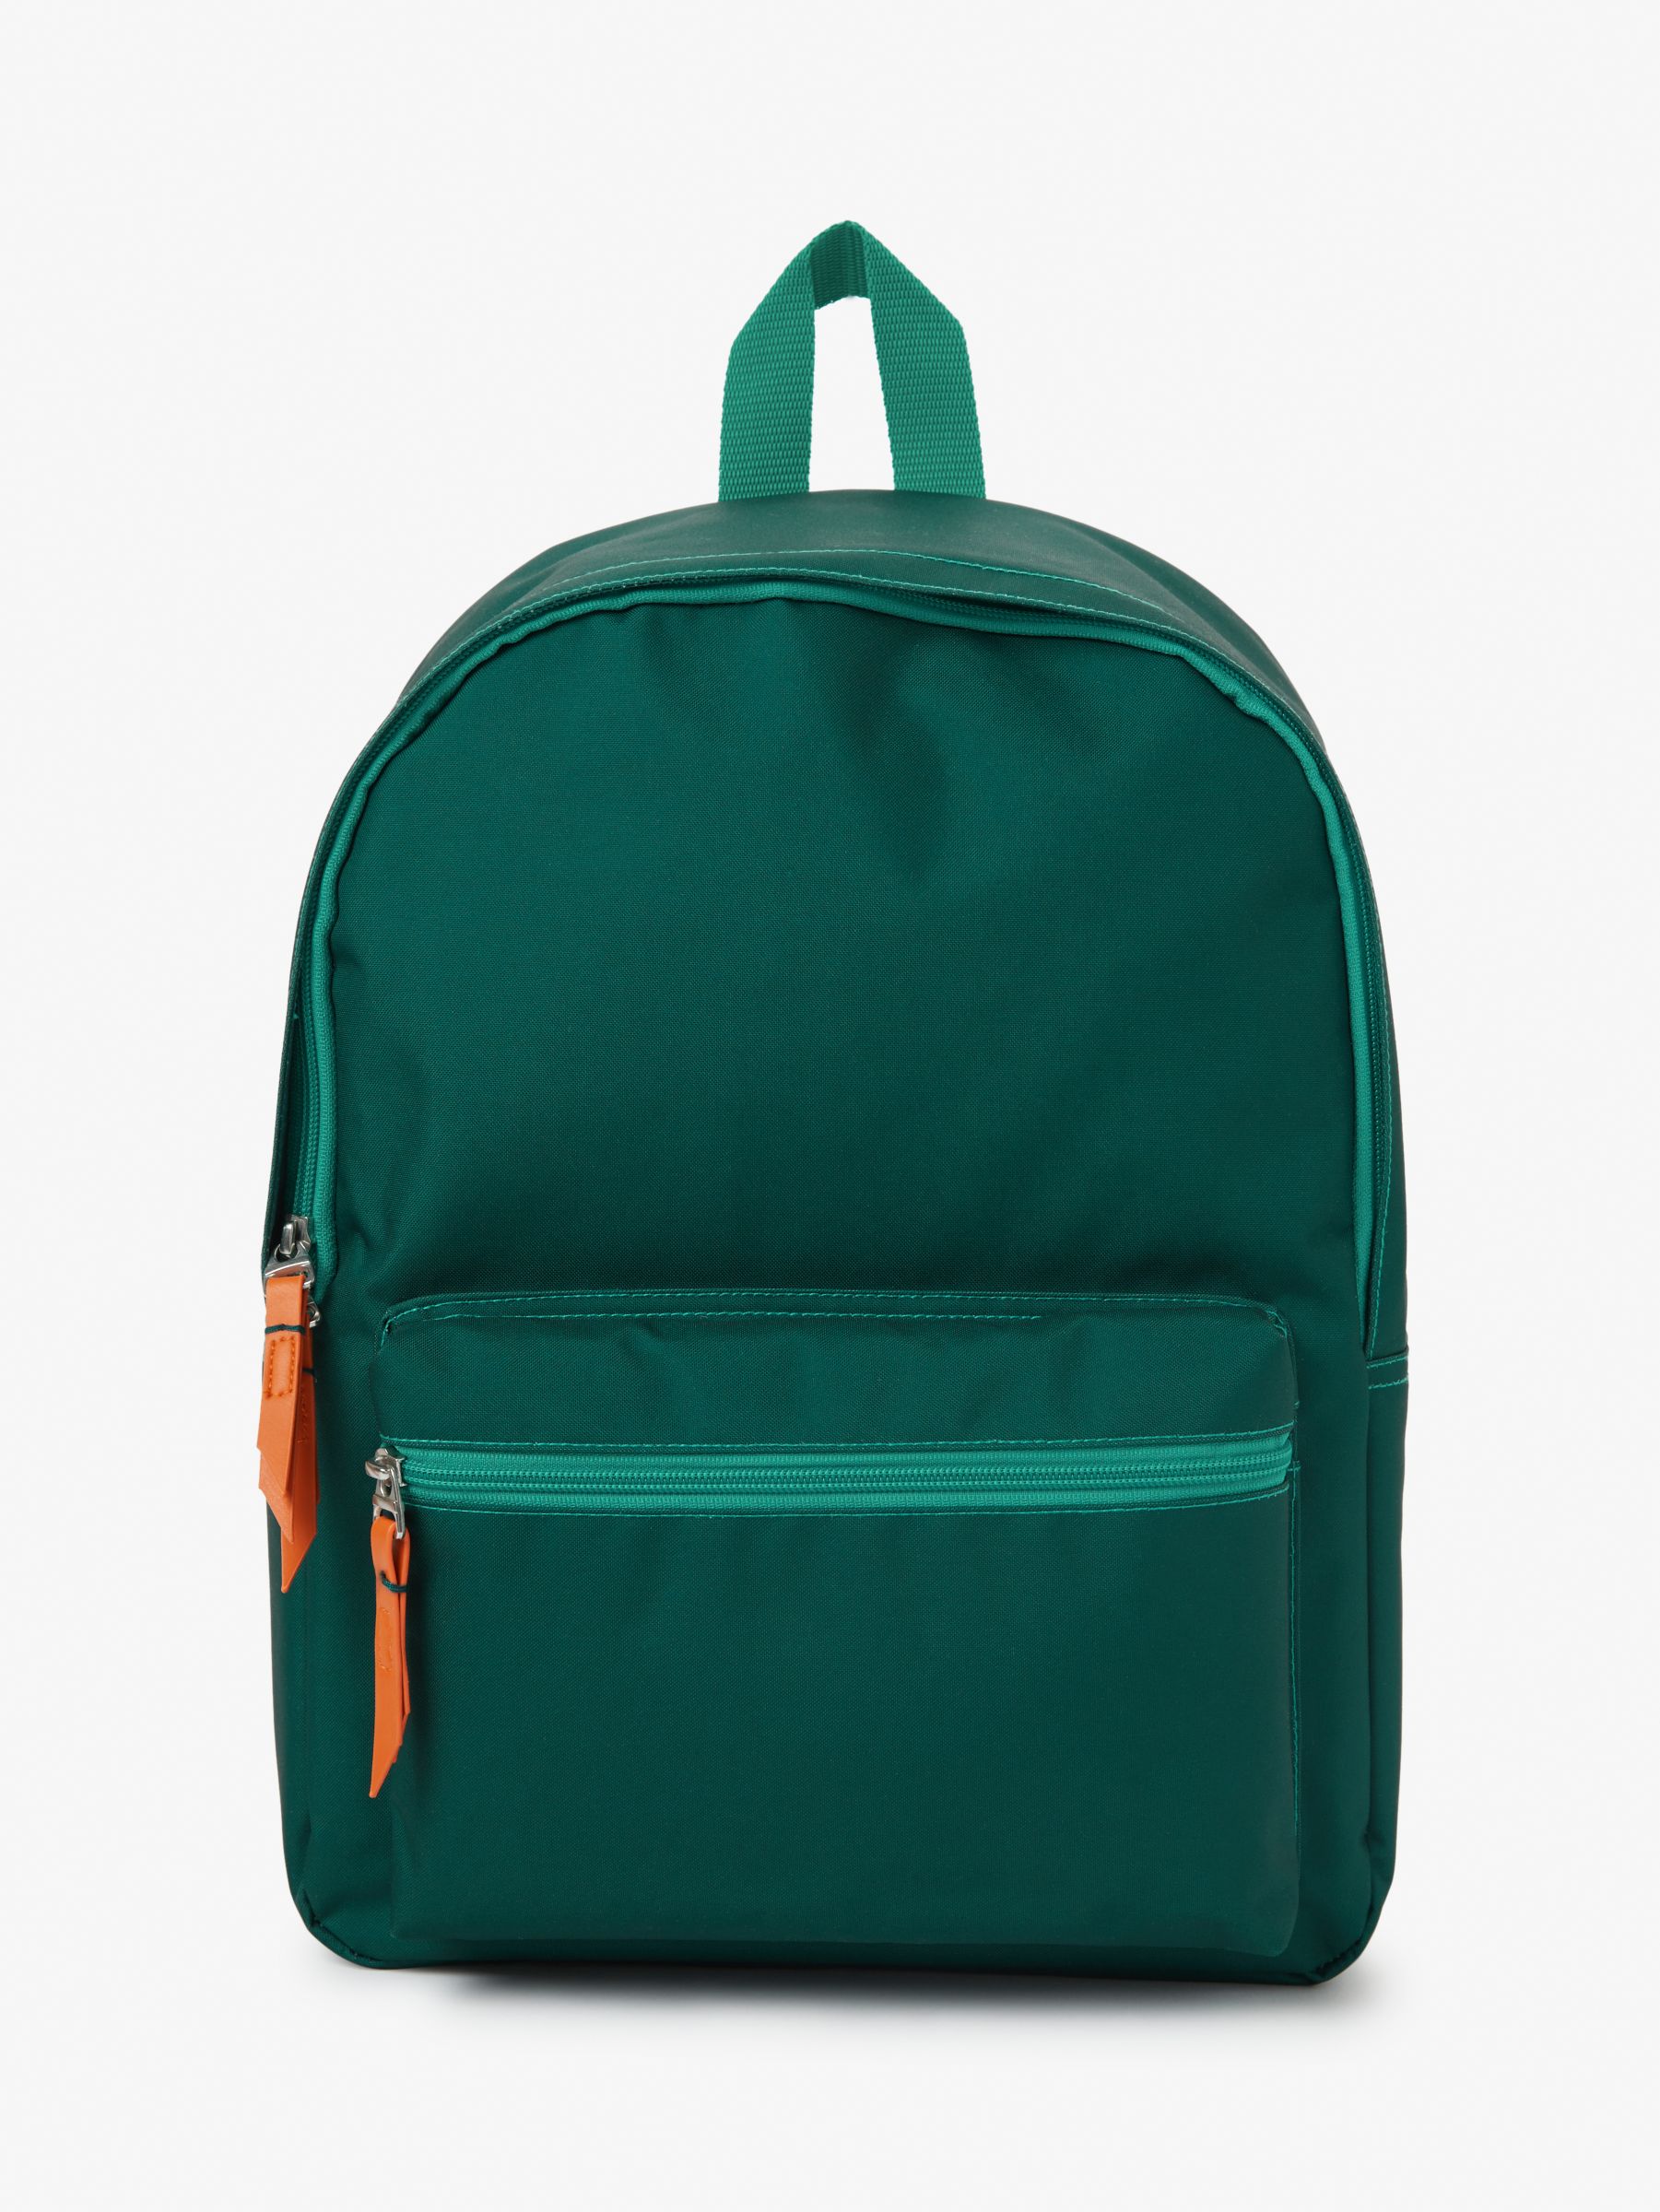 Backpacks | Laptop Backpacks, Rucksacks, Jansport | John Lewis